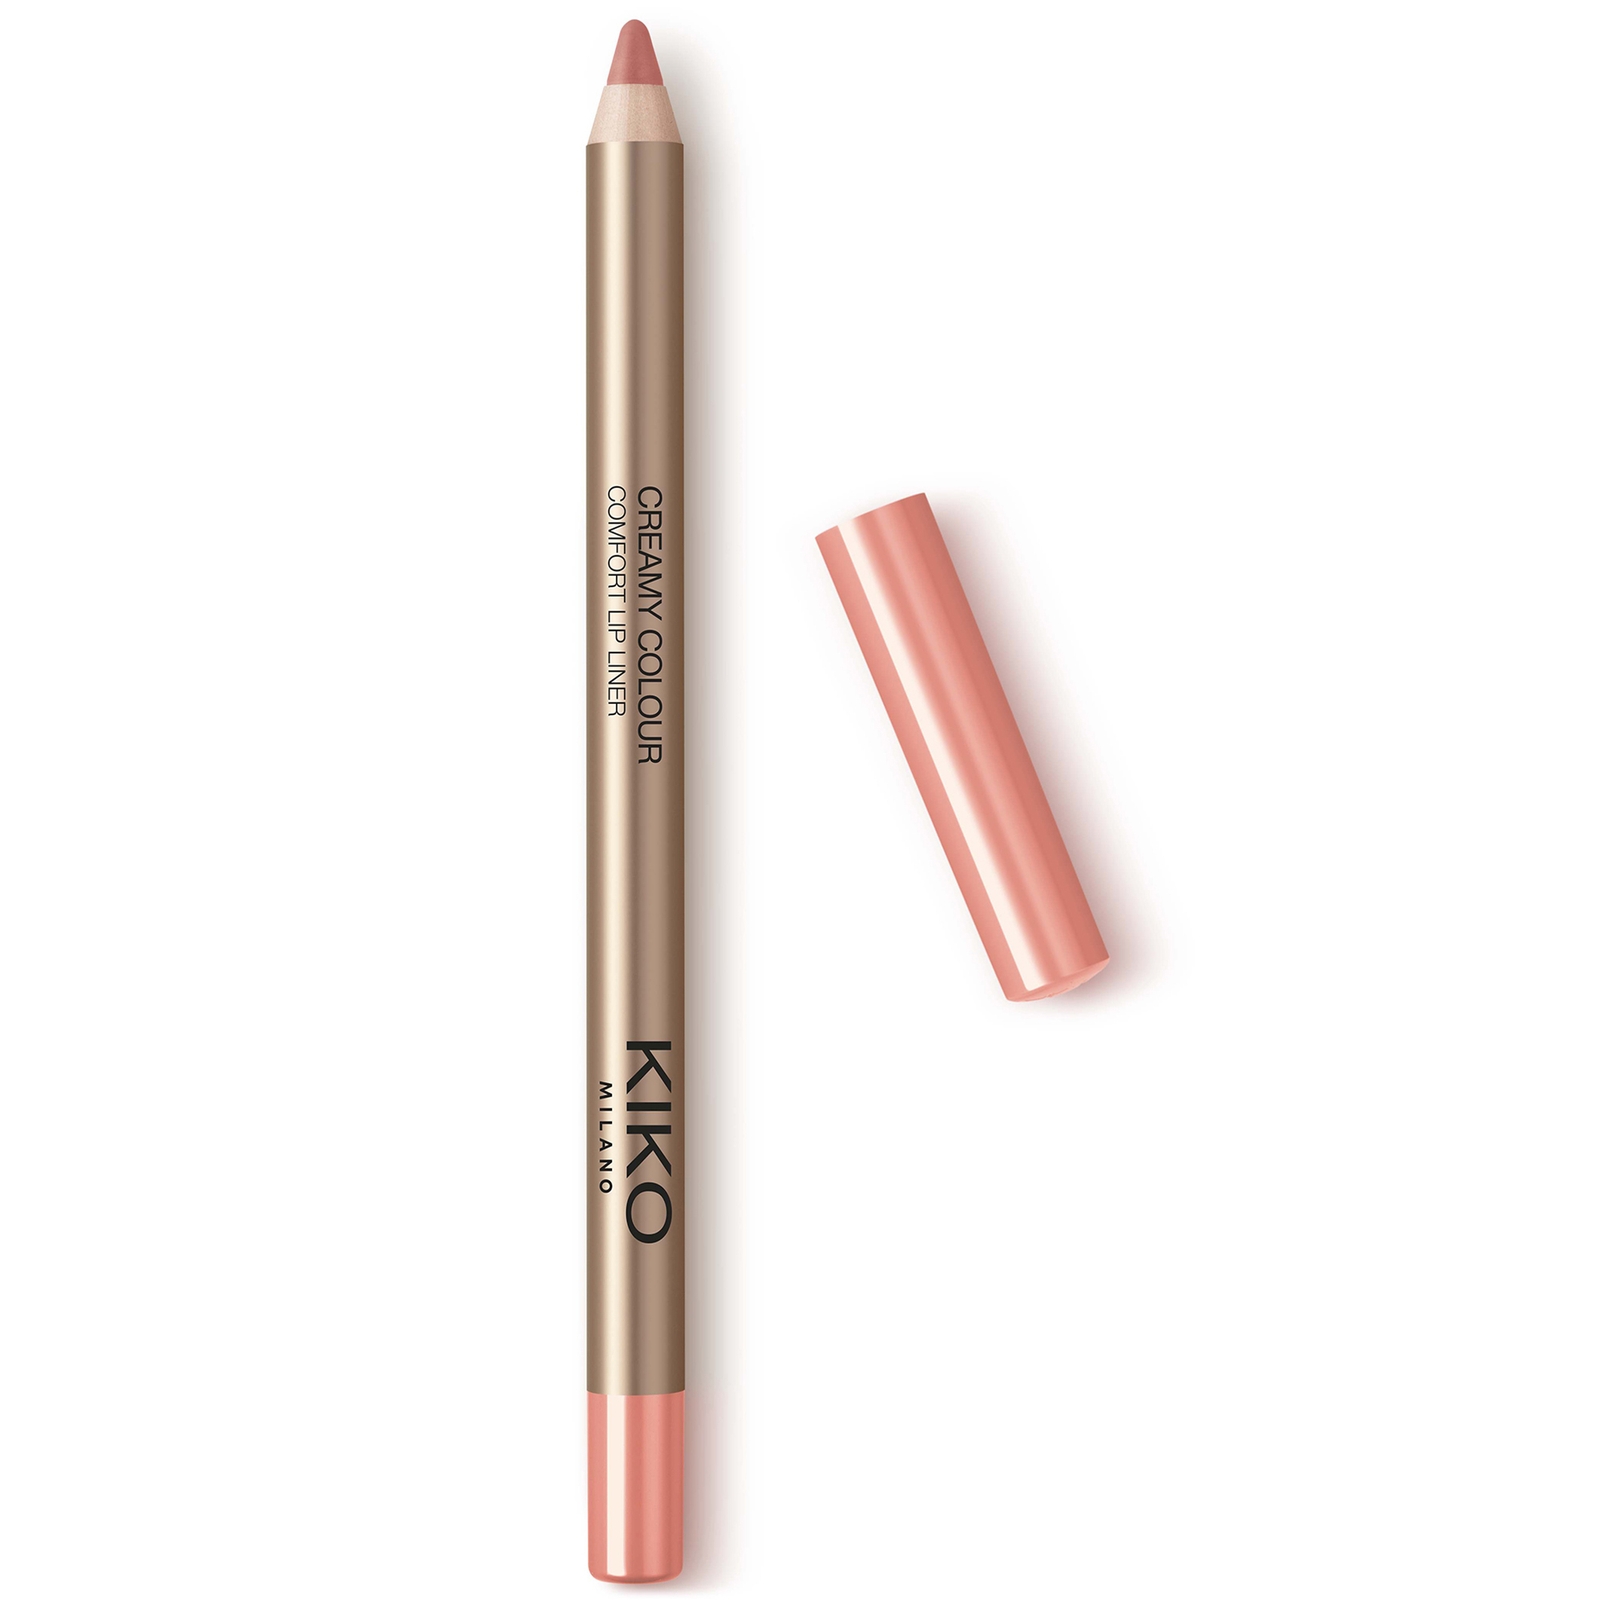 KIKO Milano Creamy Colour Comfort Lip Liner 1.2g (Various Shades) - 01 Natural Rose